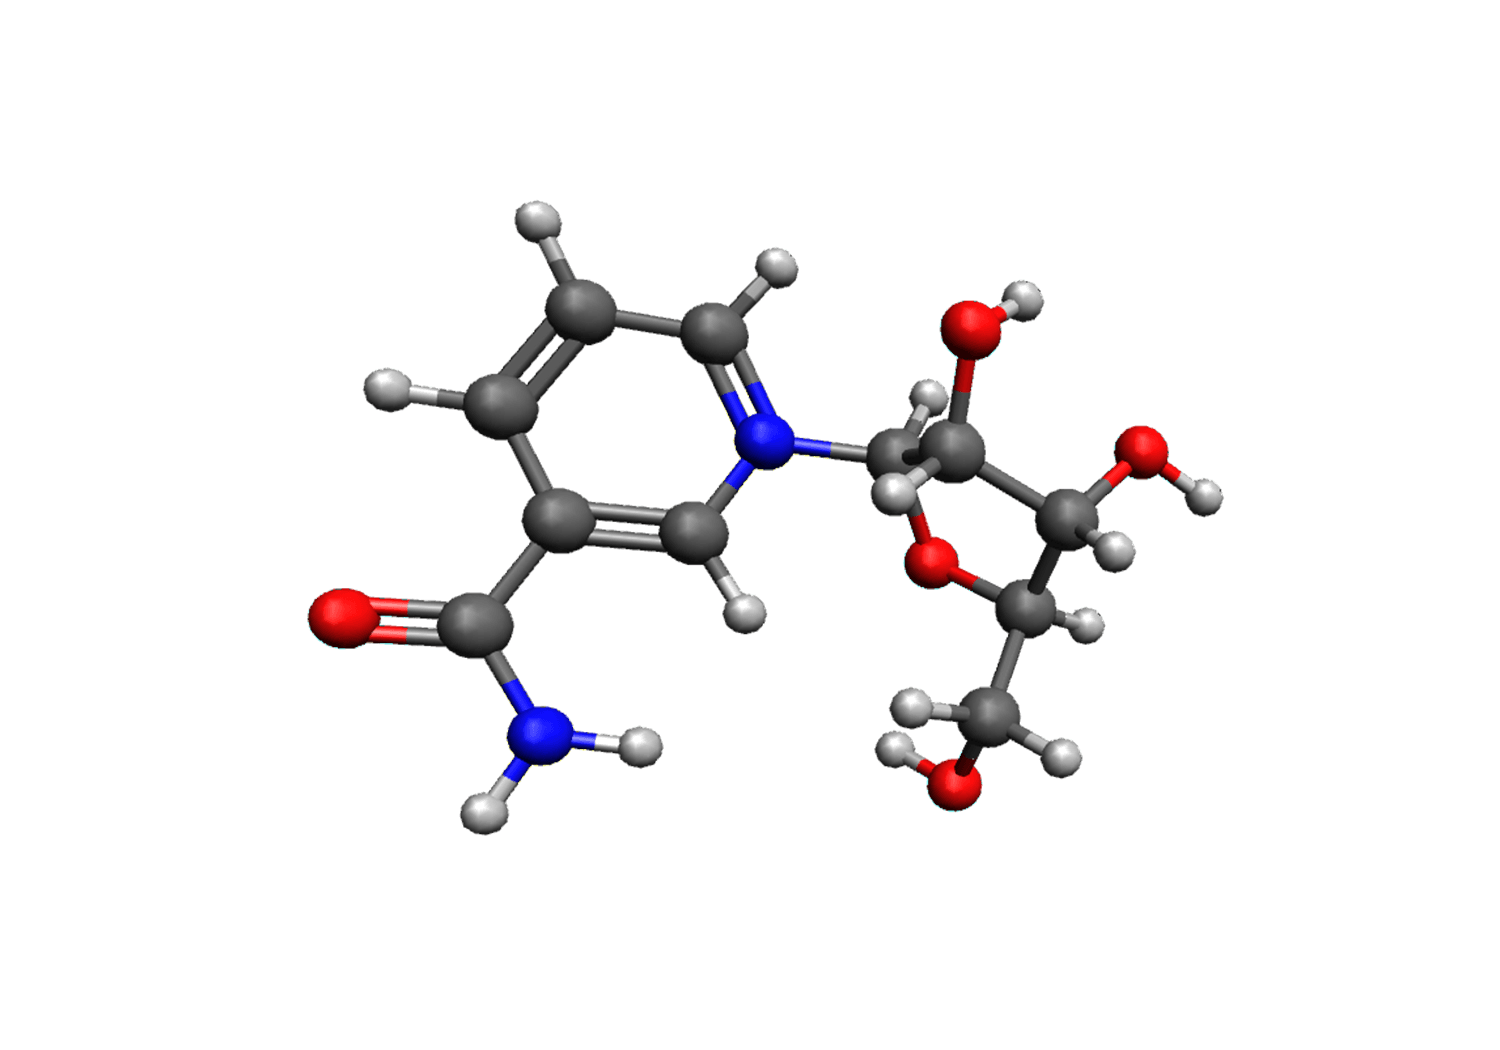 NR (Nicotinamide Riboside)